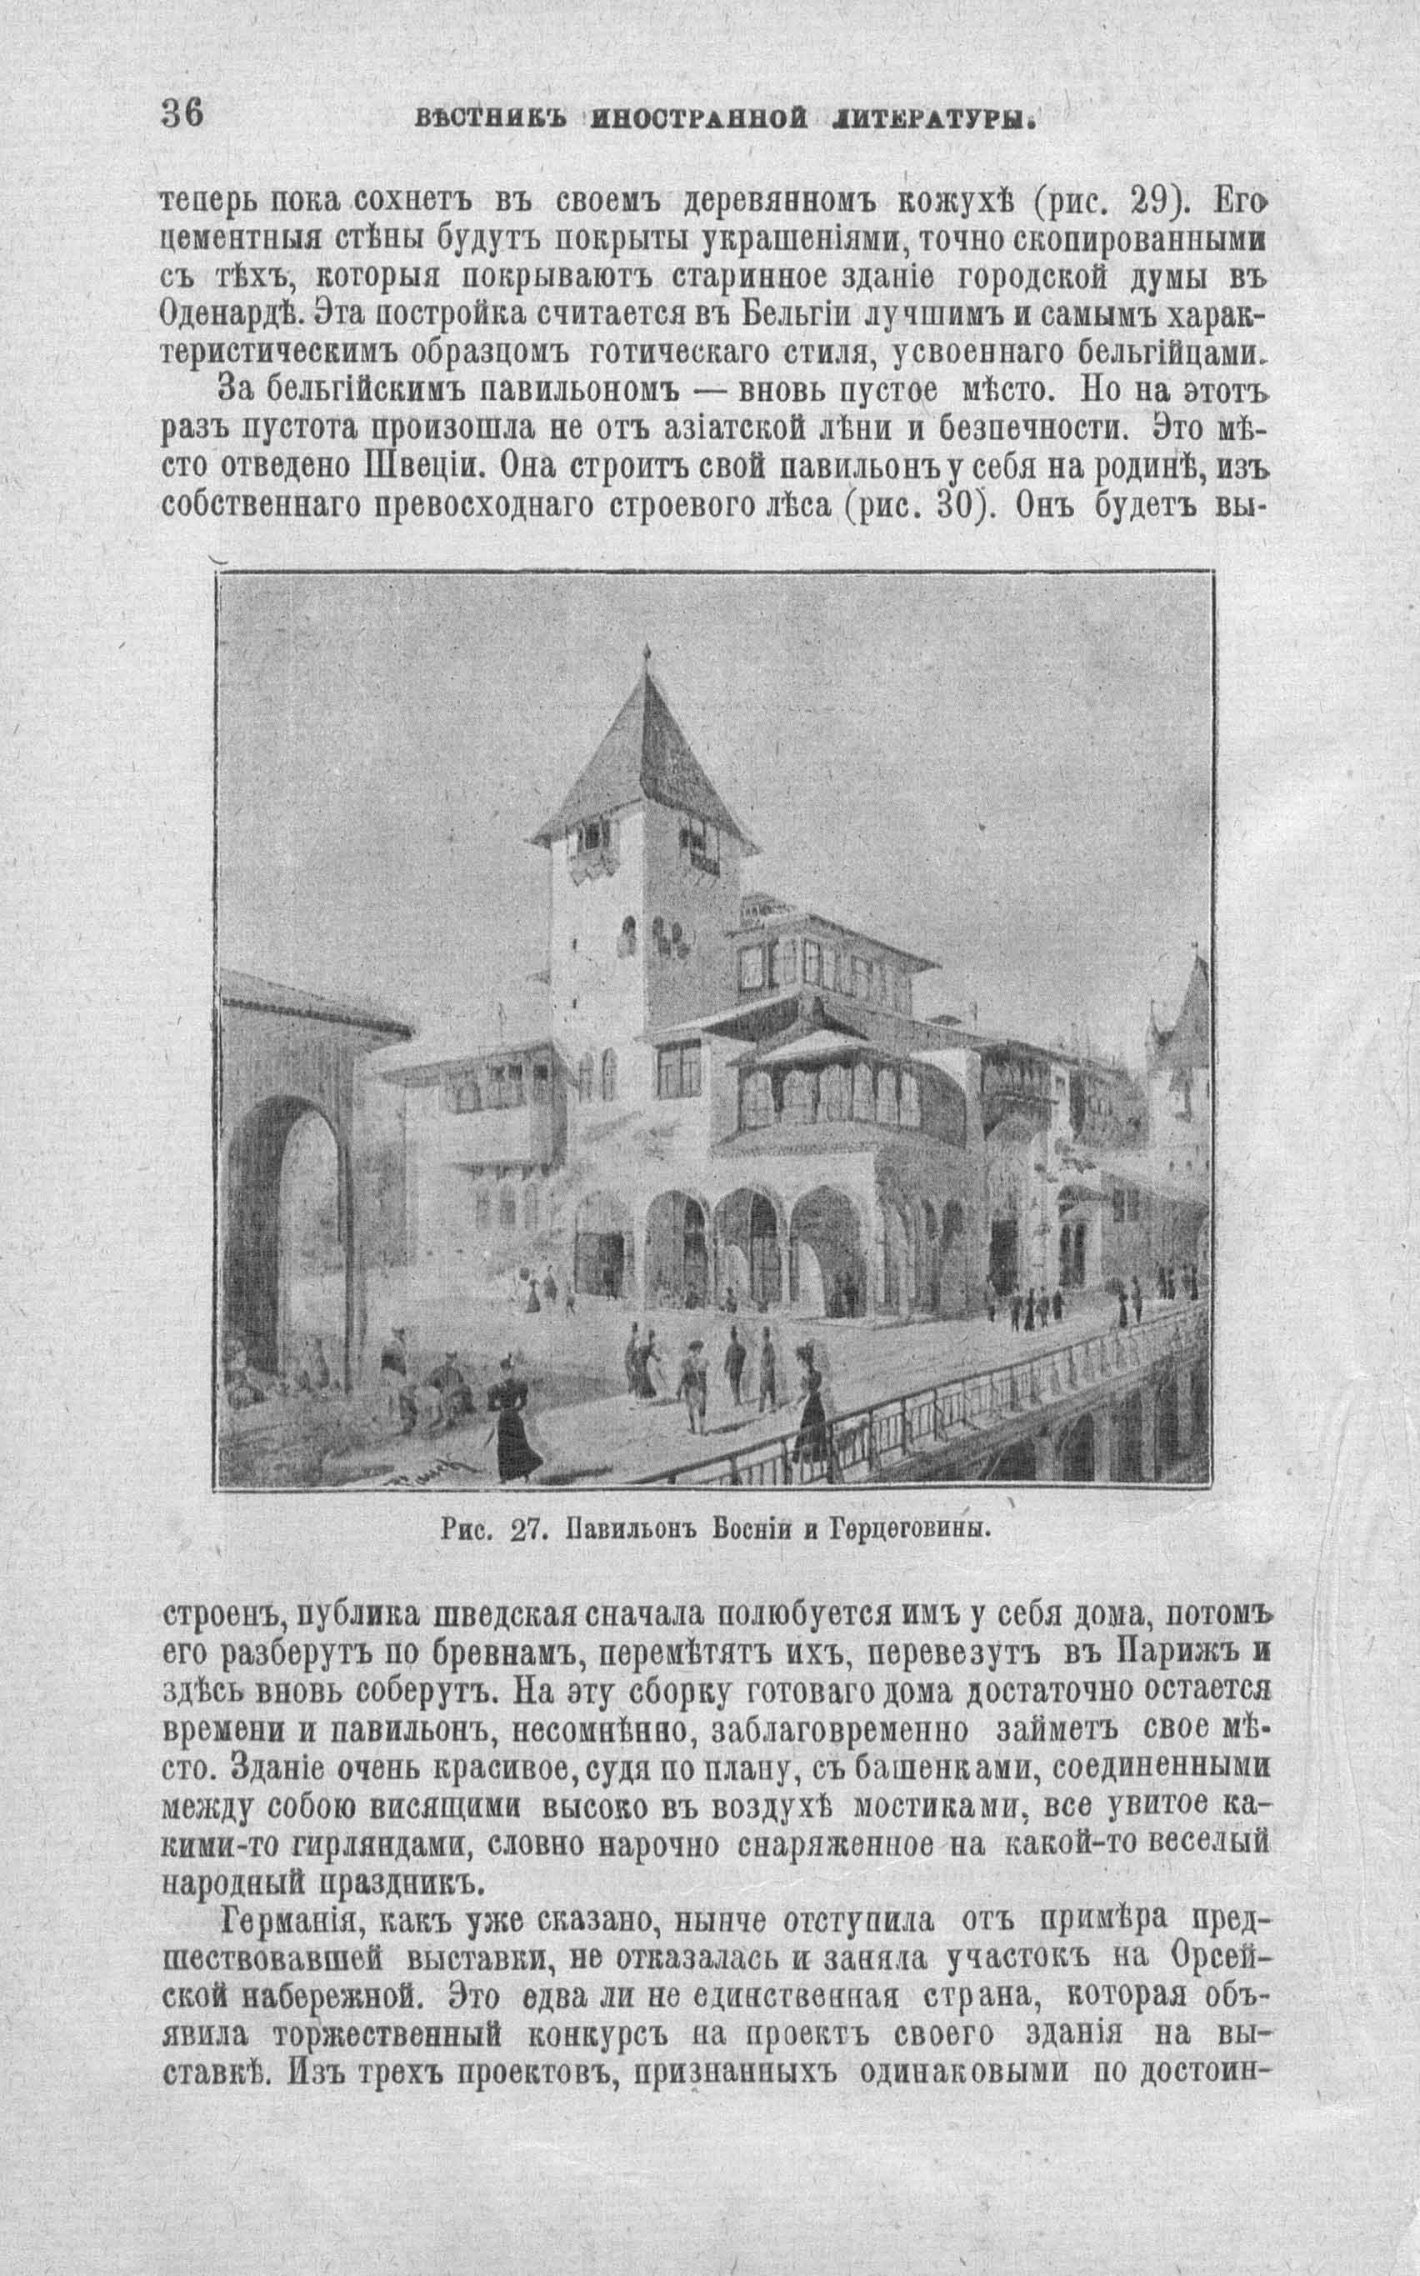 Всемирная выставка 1900 года в Париже. Павильон Боснии и Герцеговины